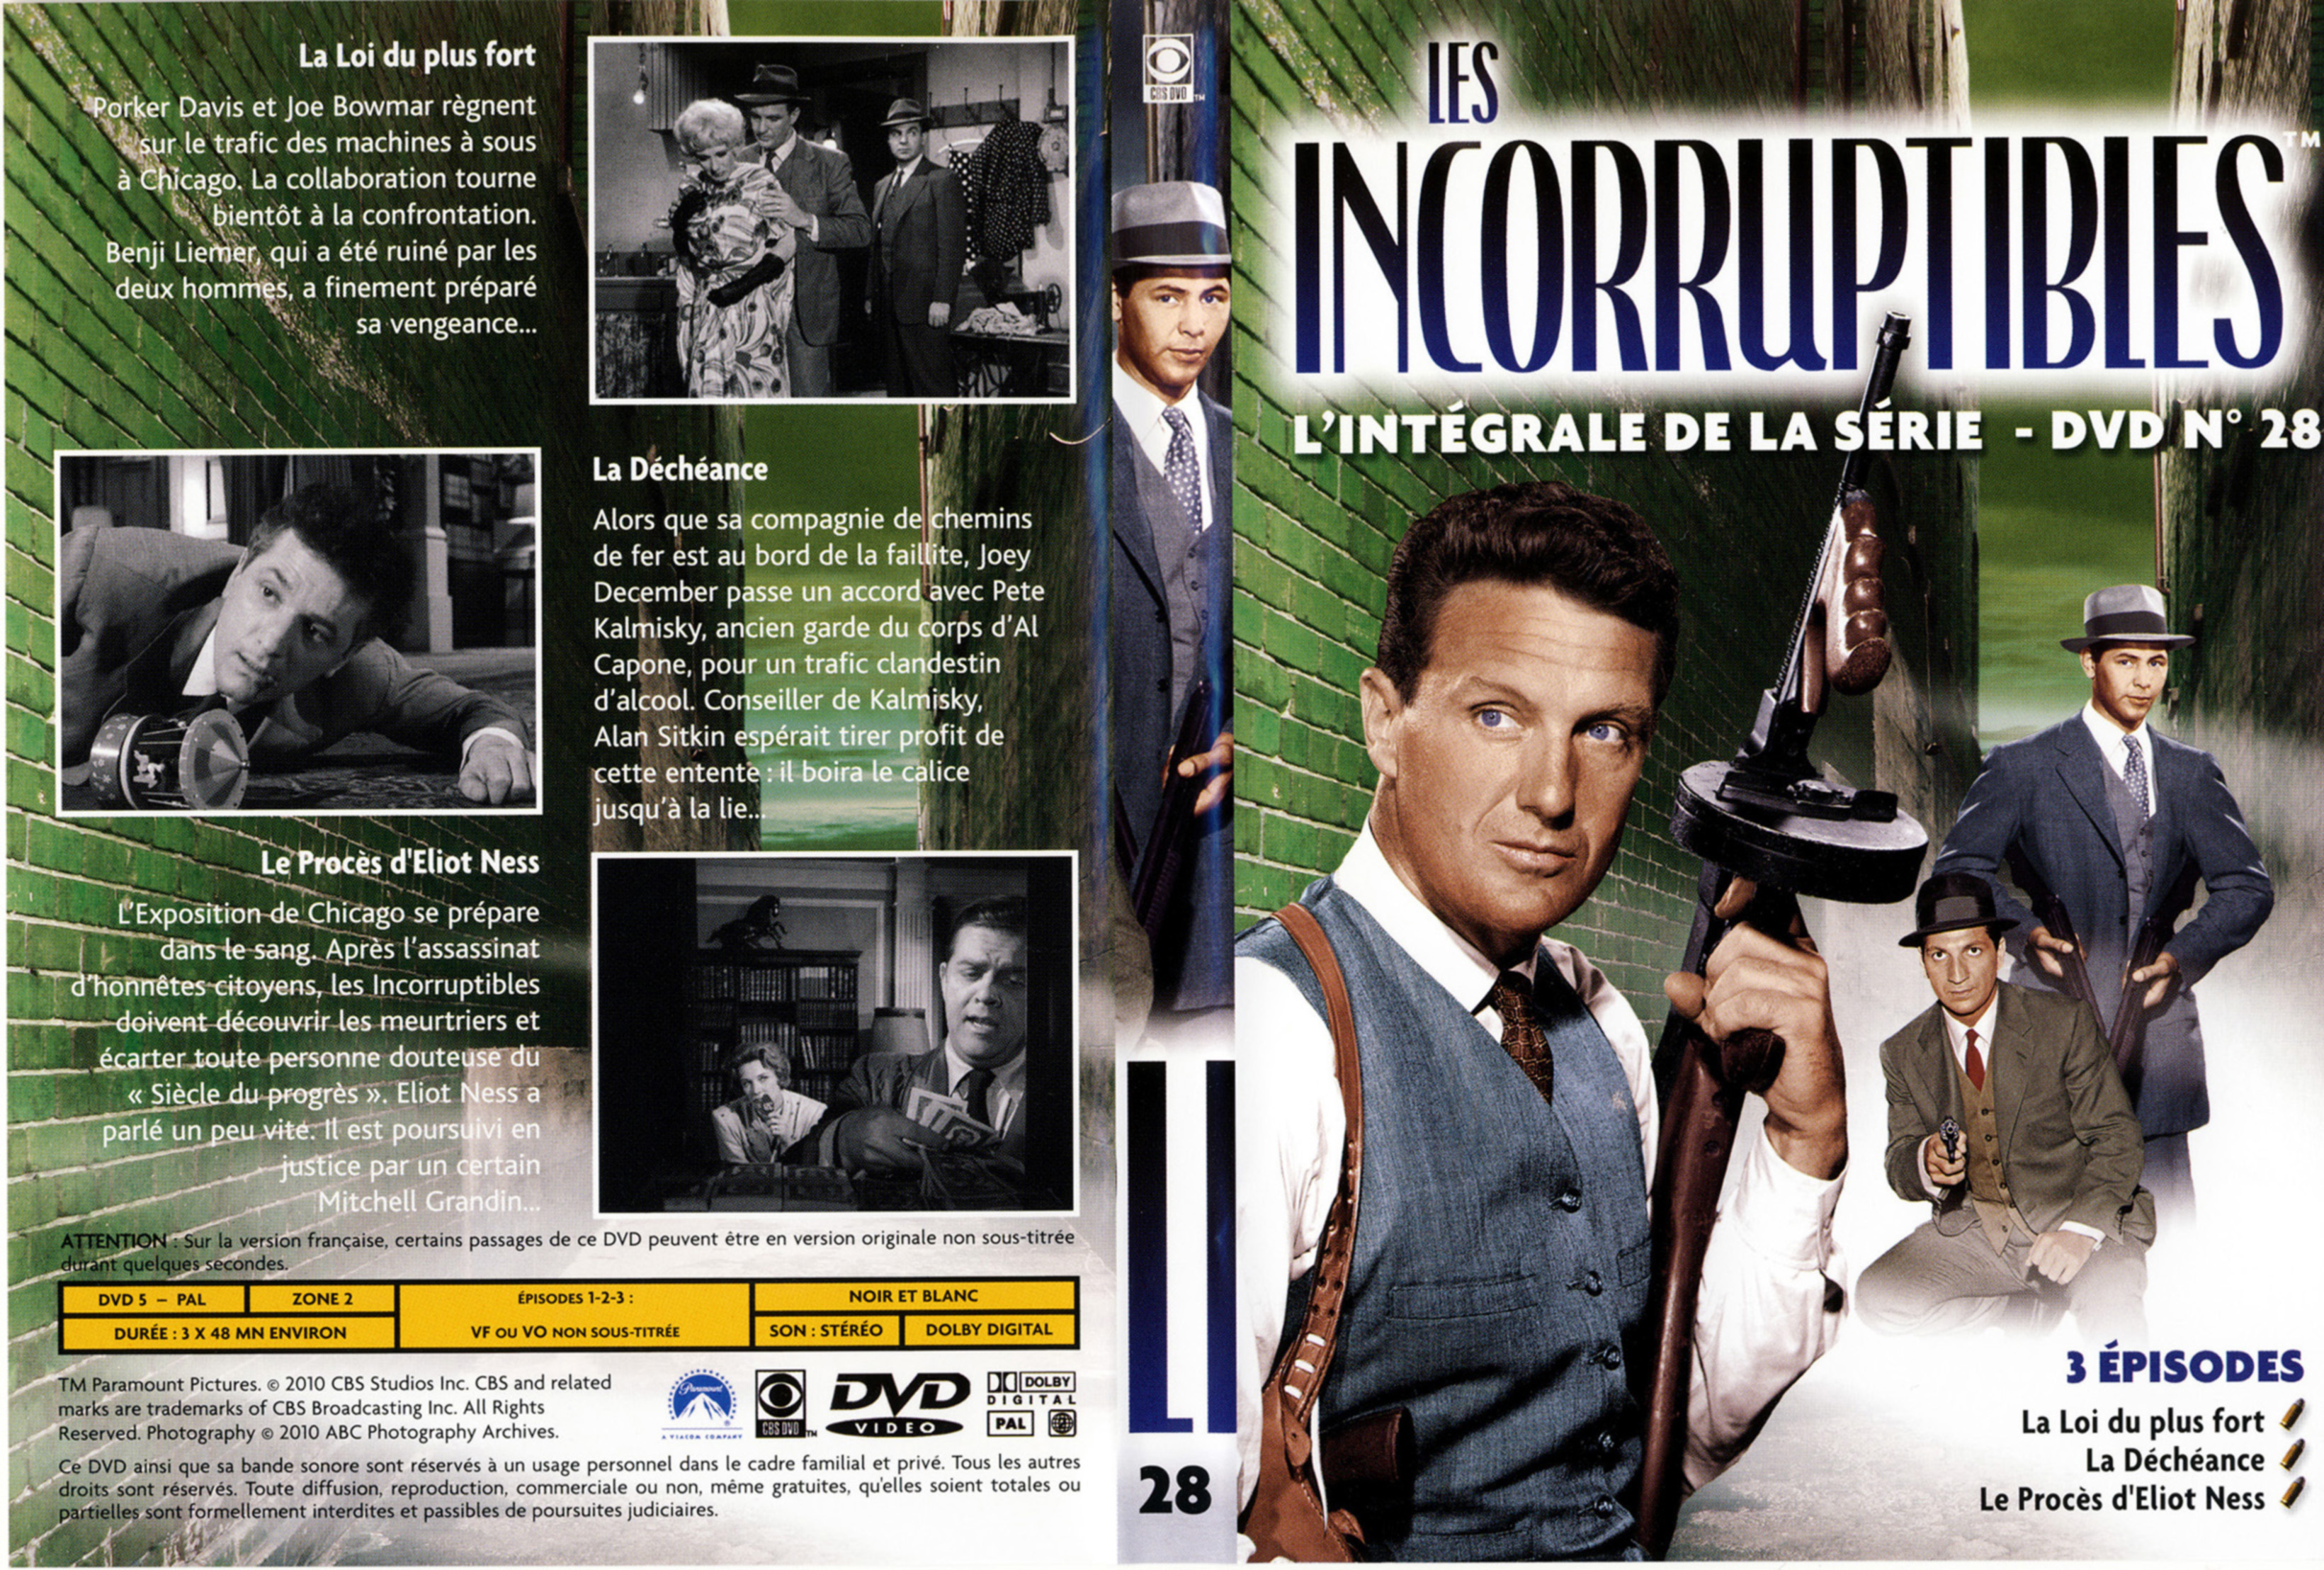 Jaquette DVD Les incorruptibles intgrale DVD 28